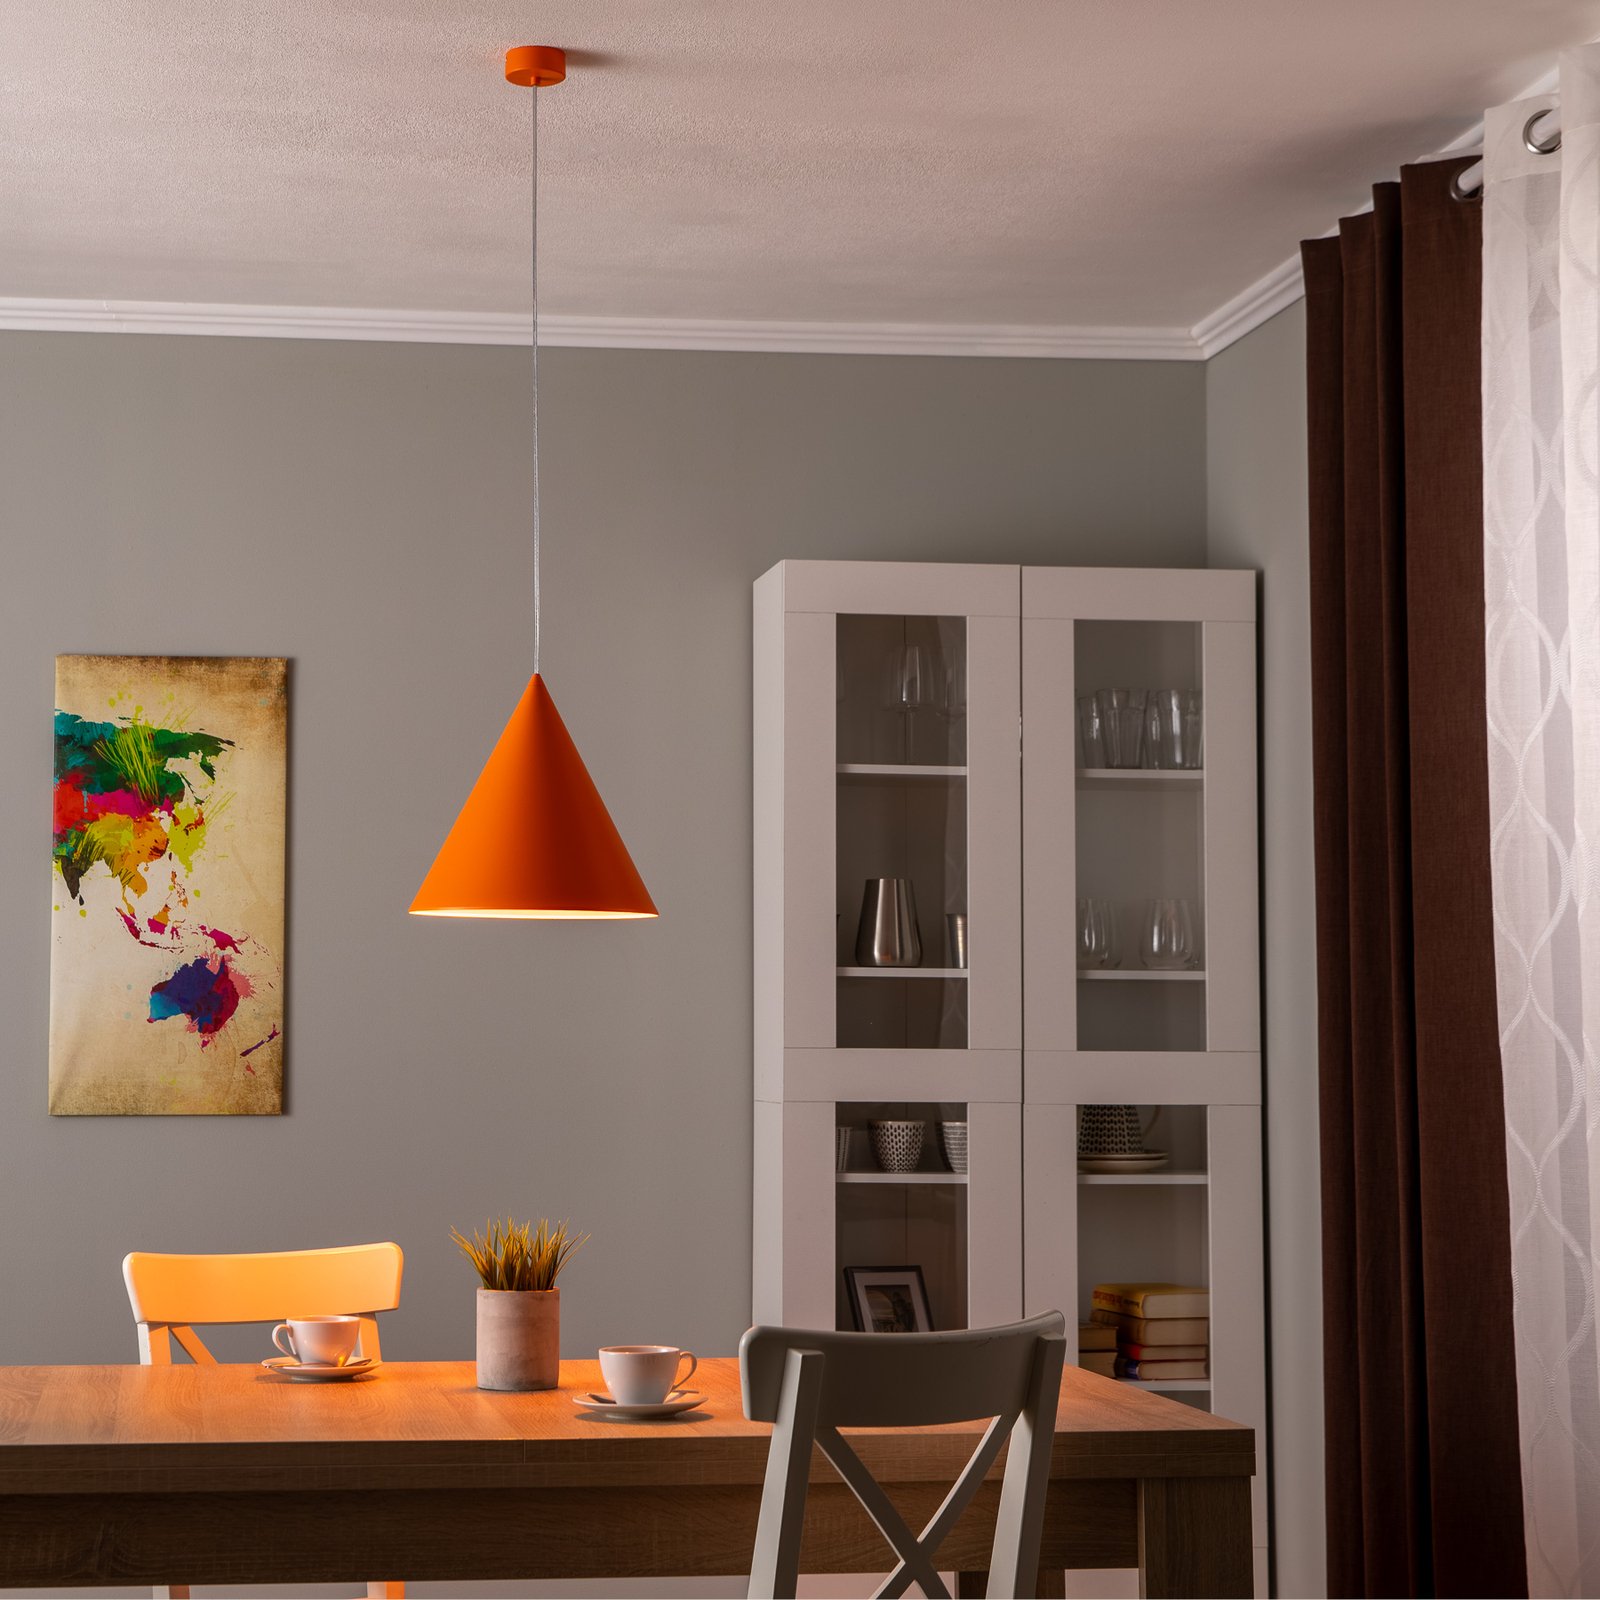 Lampa wisząca Cono, 1-punktowa, Ø 32 cm, pomarańczowa